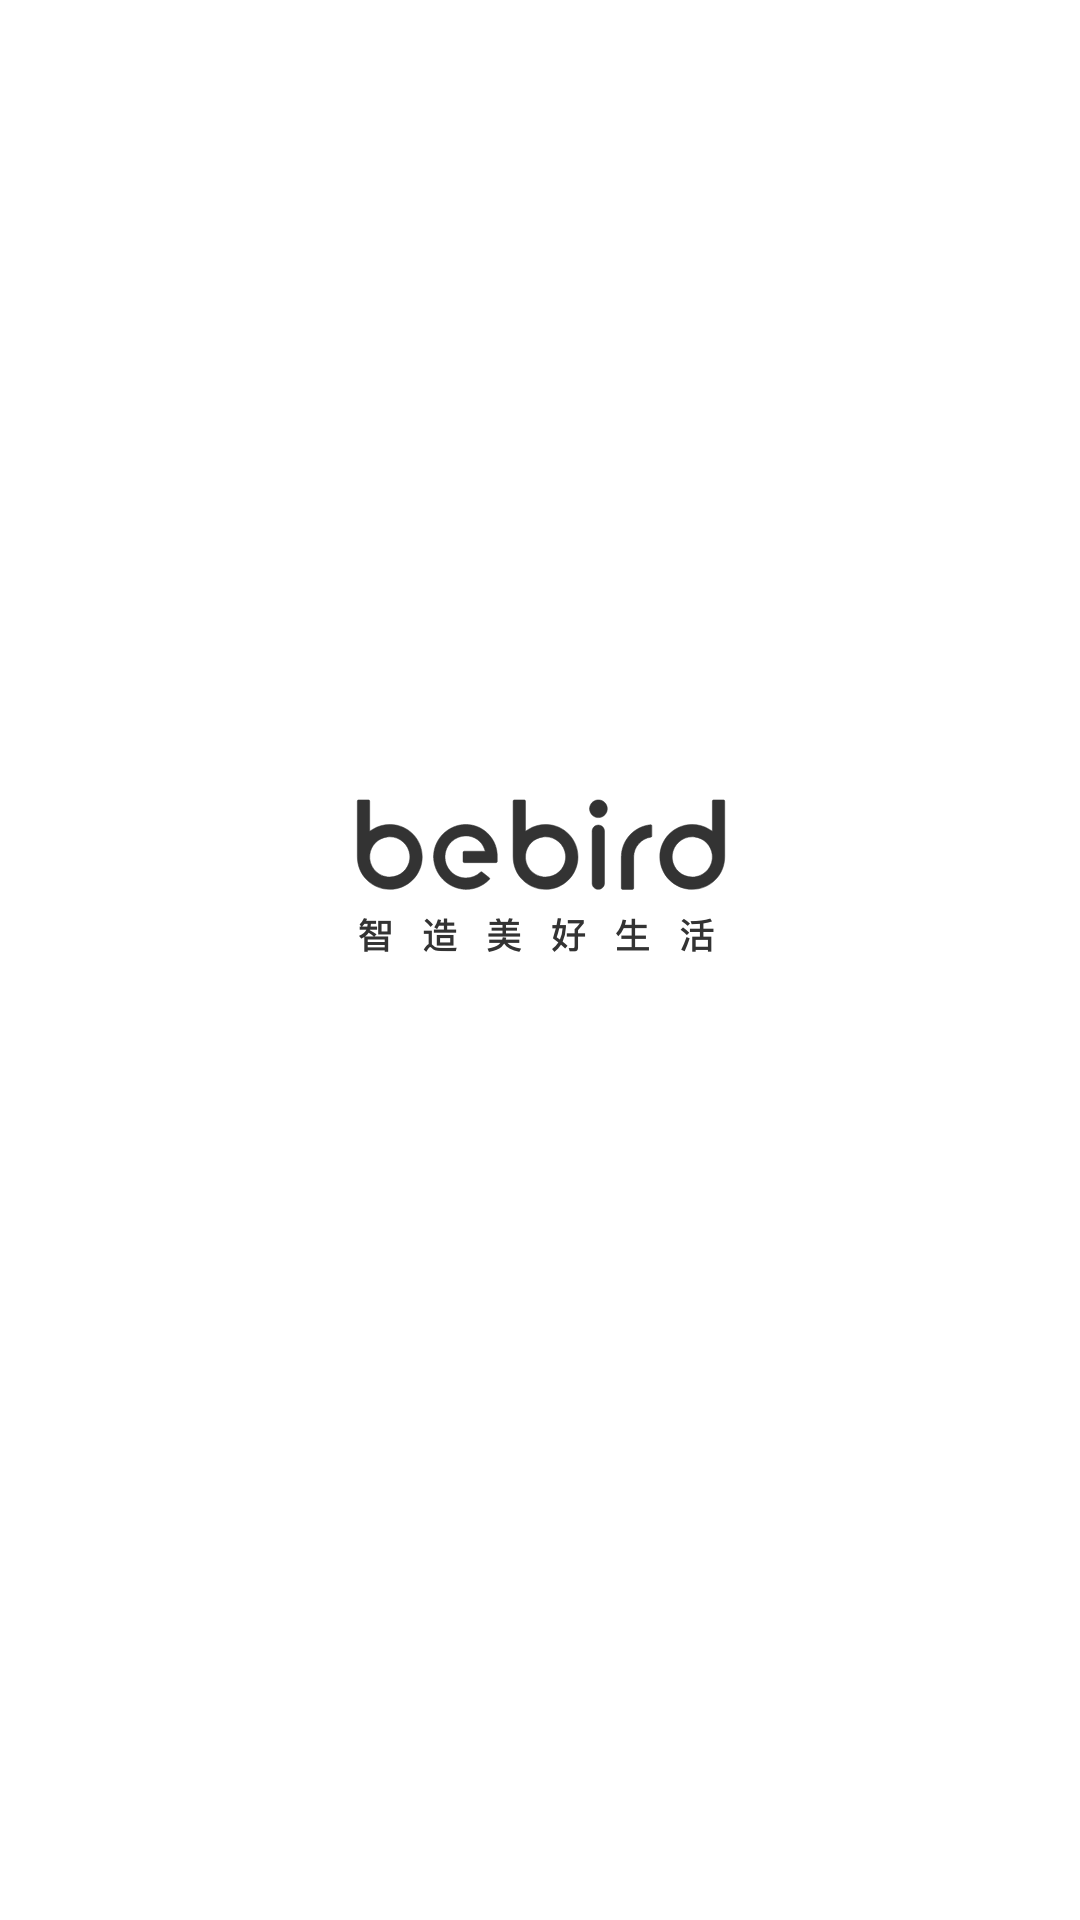 bebirdv6.1.44截图5